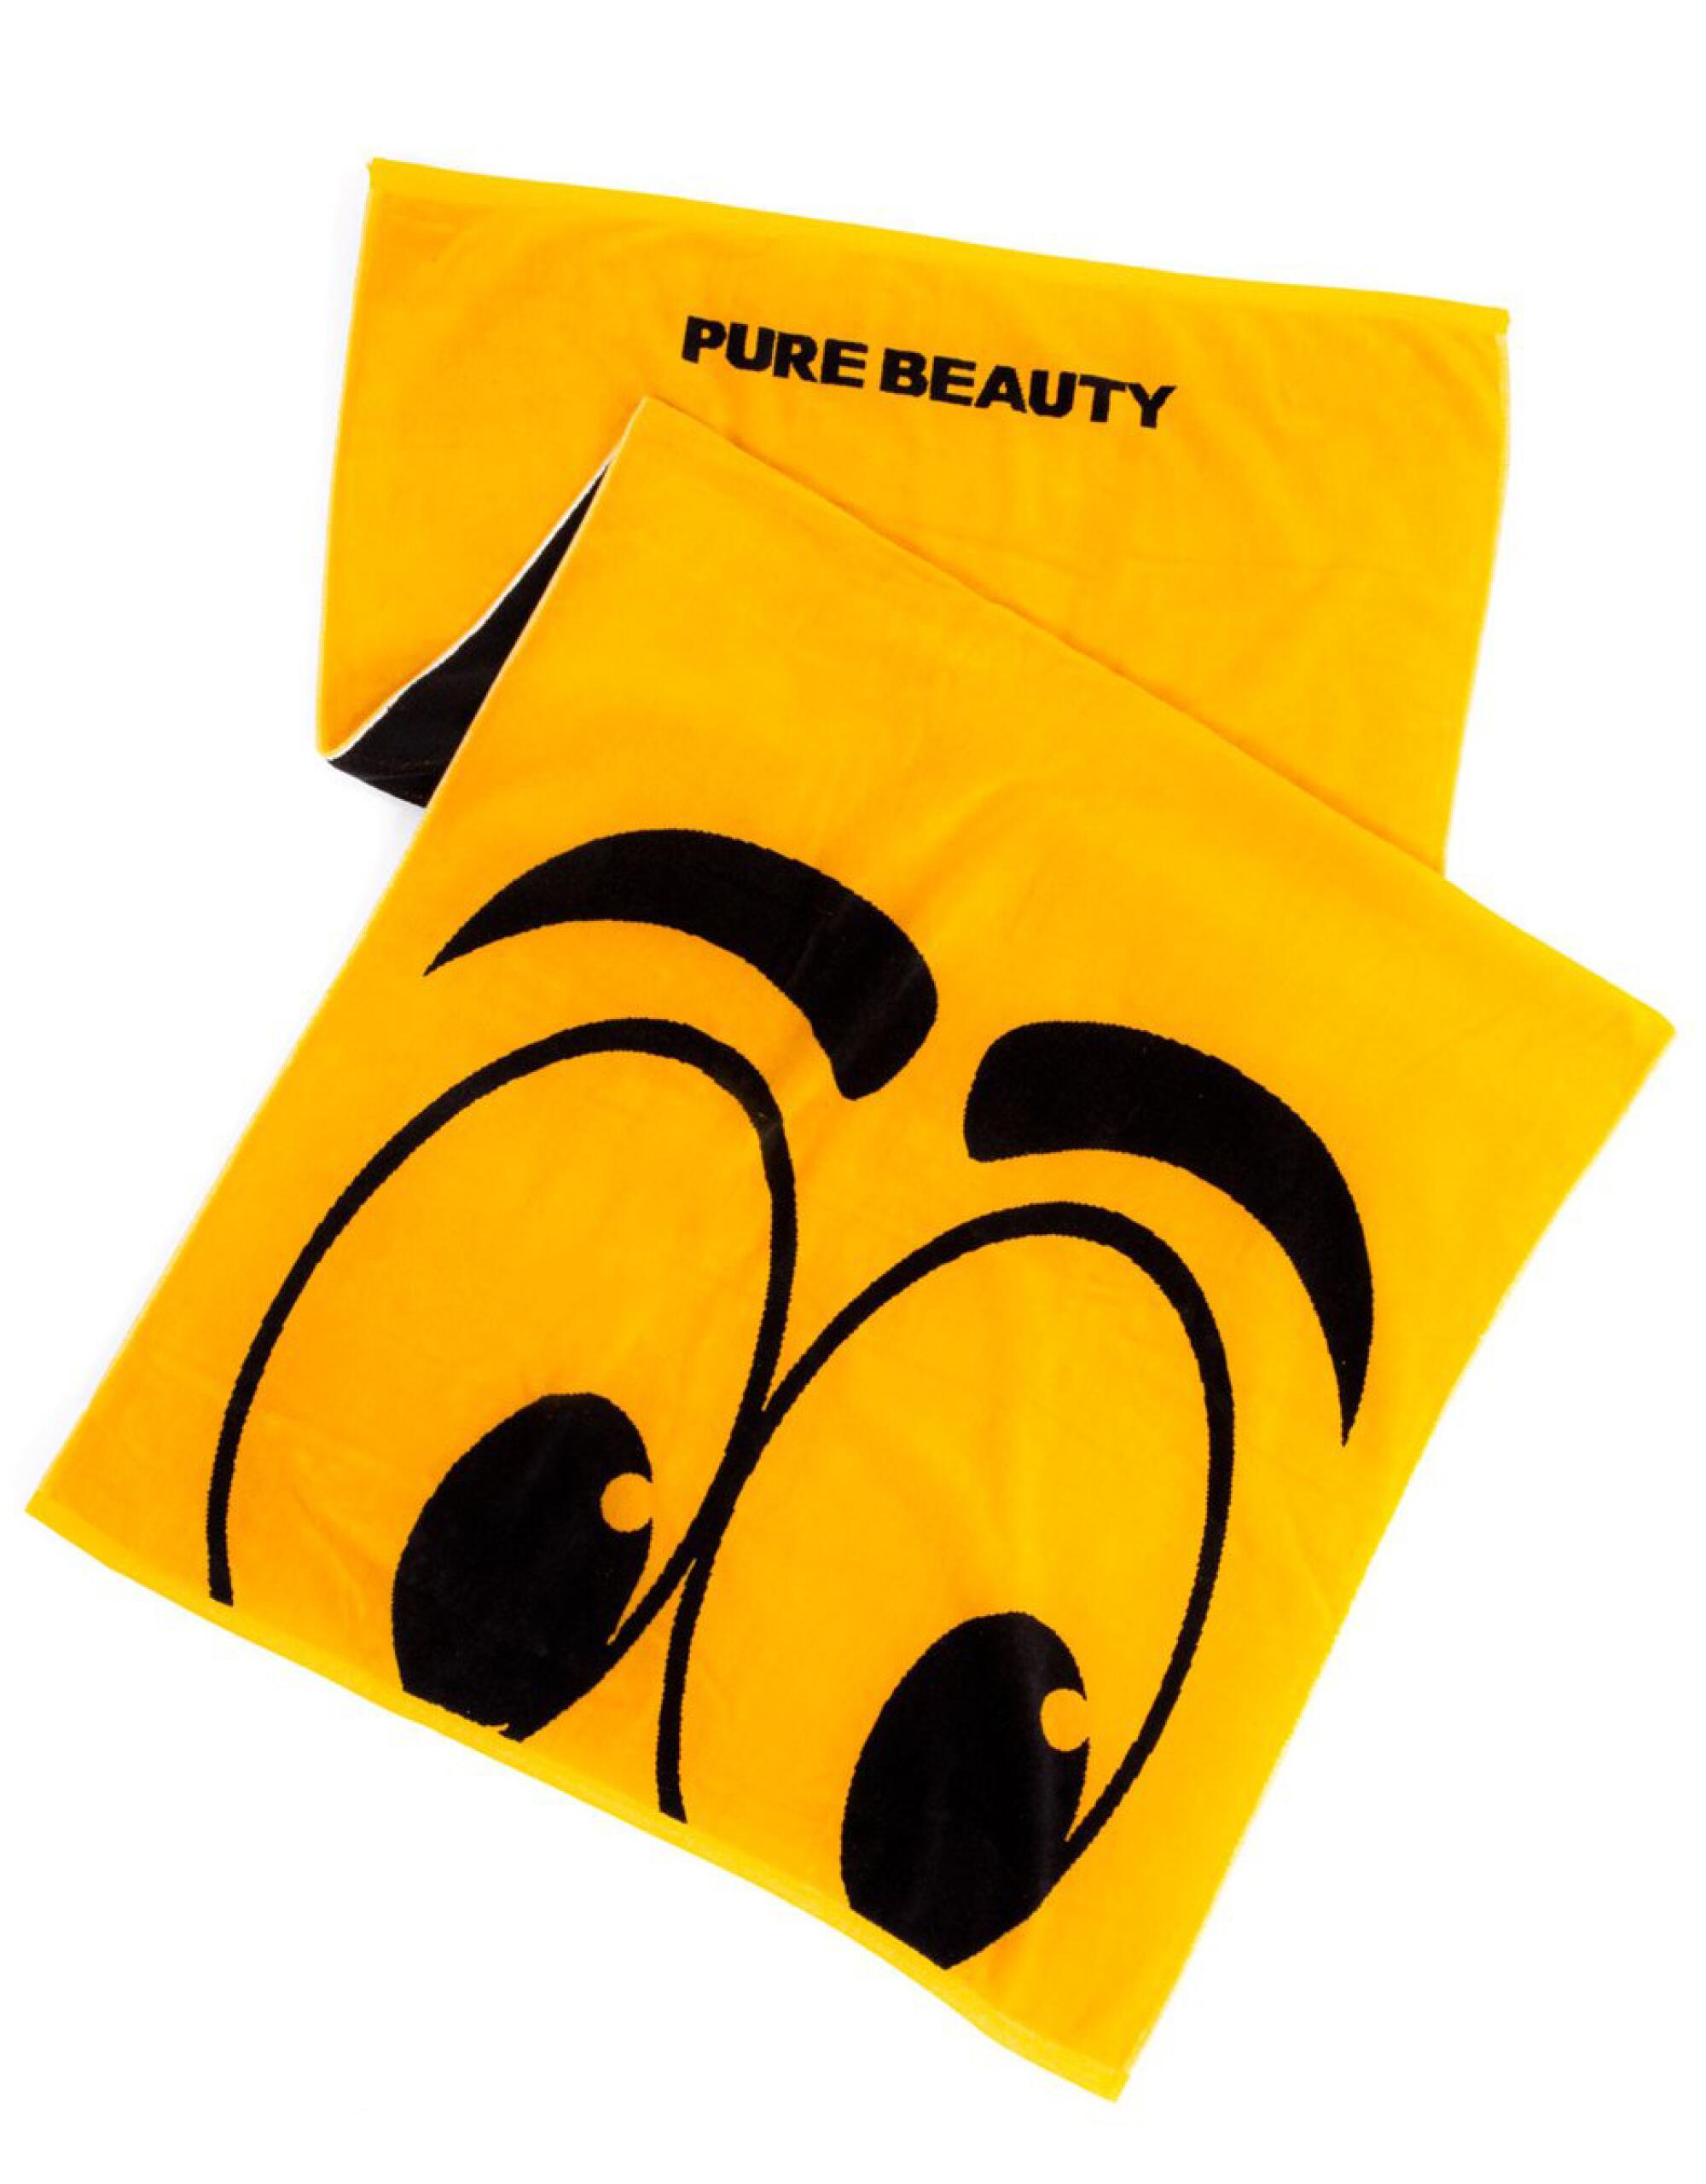 Pure Beauty towel.